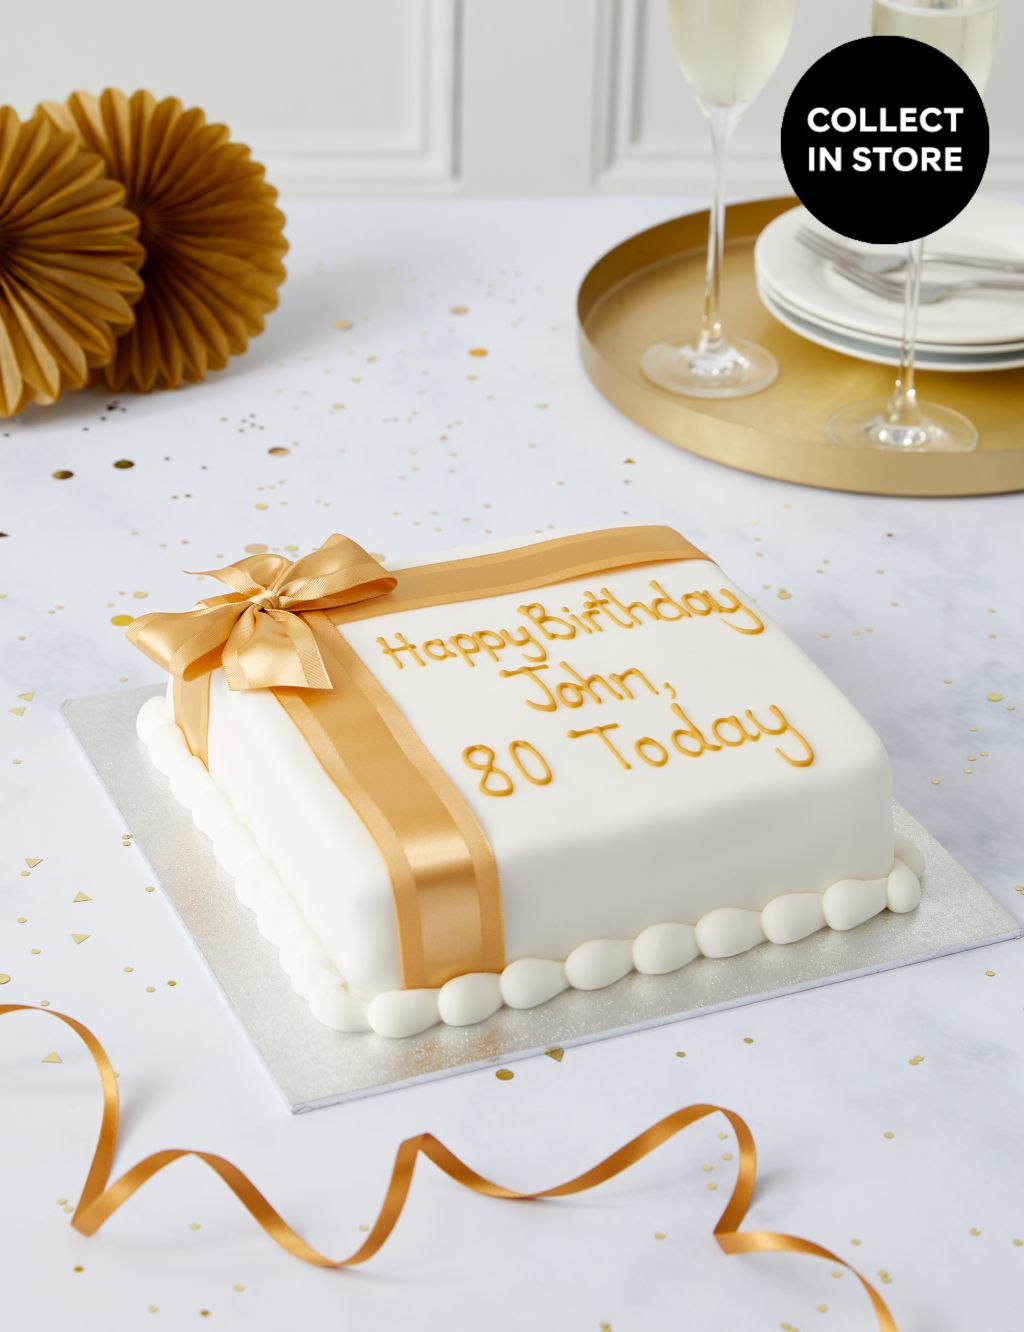 Personalised Celebration Sponge Cake with Gold Ribbon (Serves 30) 3 of 6